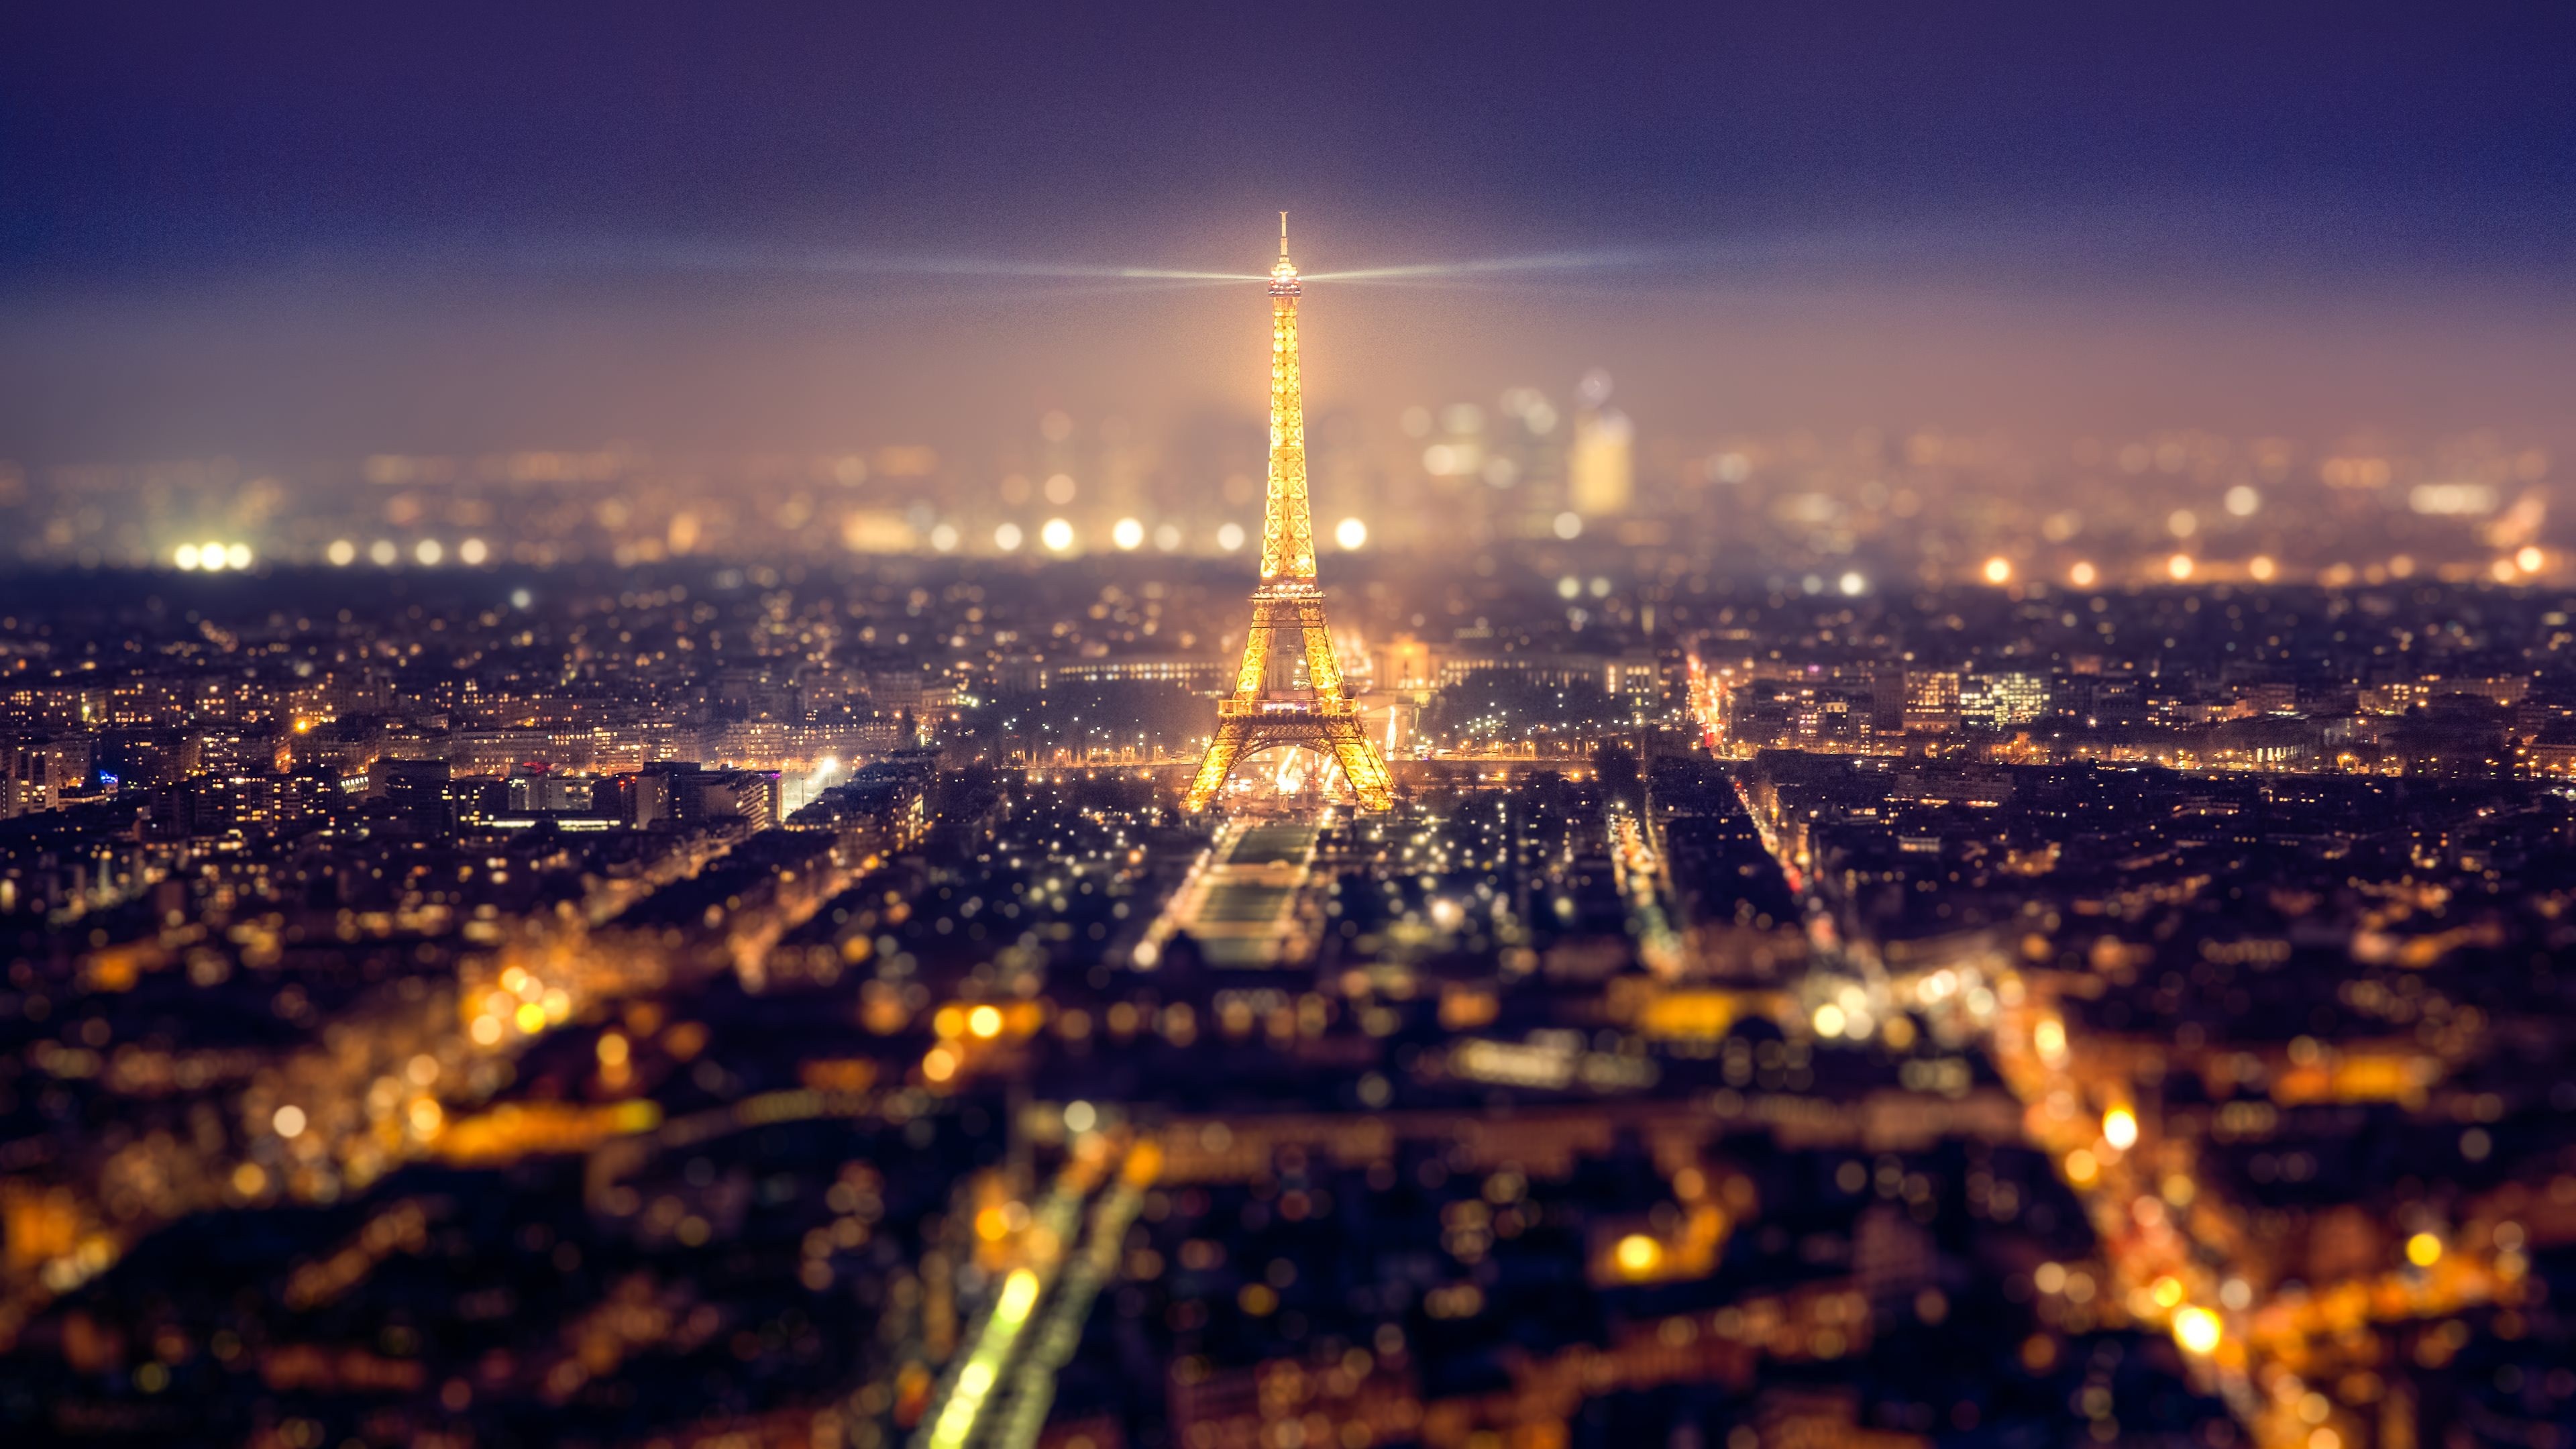 321410 免費下載壁紙 人造, 埃菲尔铁塔, 城市景观, 法国, 纪念馆, 夜晚, 巴黎, 纪念碑 屏保和圖片